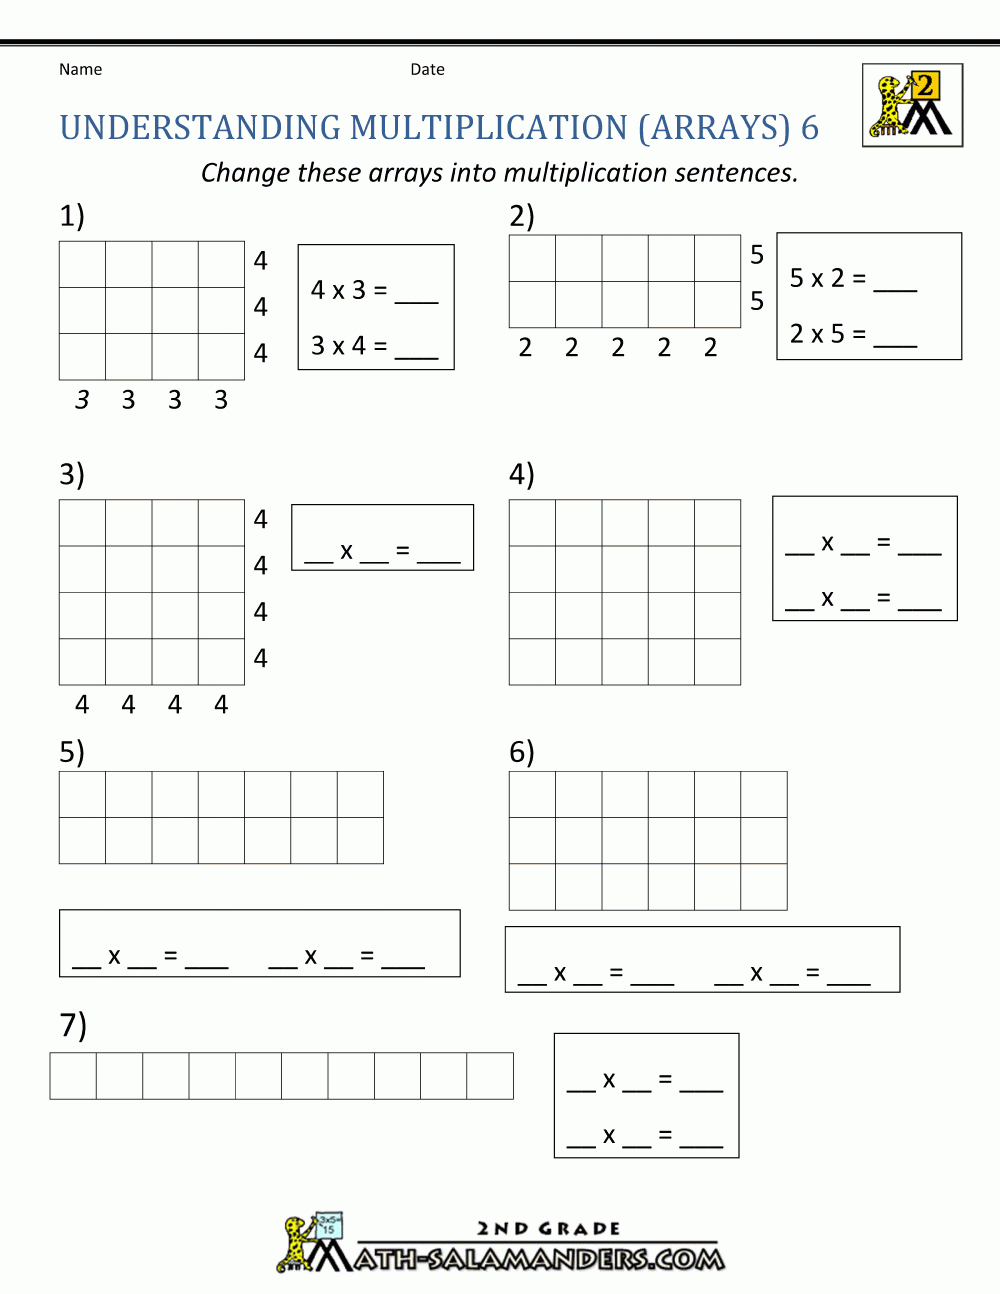 Beginning Multiplication Worksheets Together With Multiplication Arrays Worksheets 4Th Grade